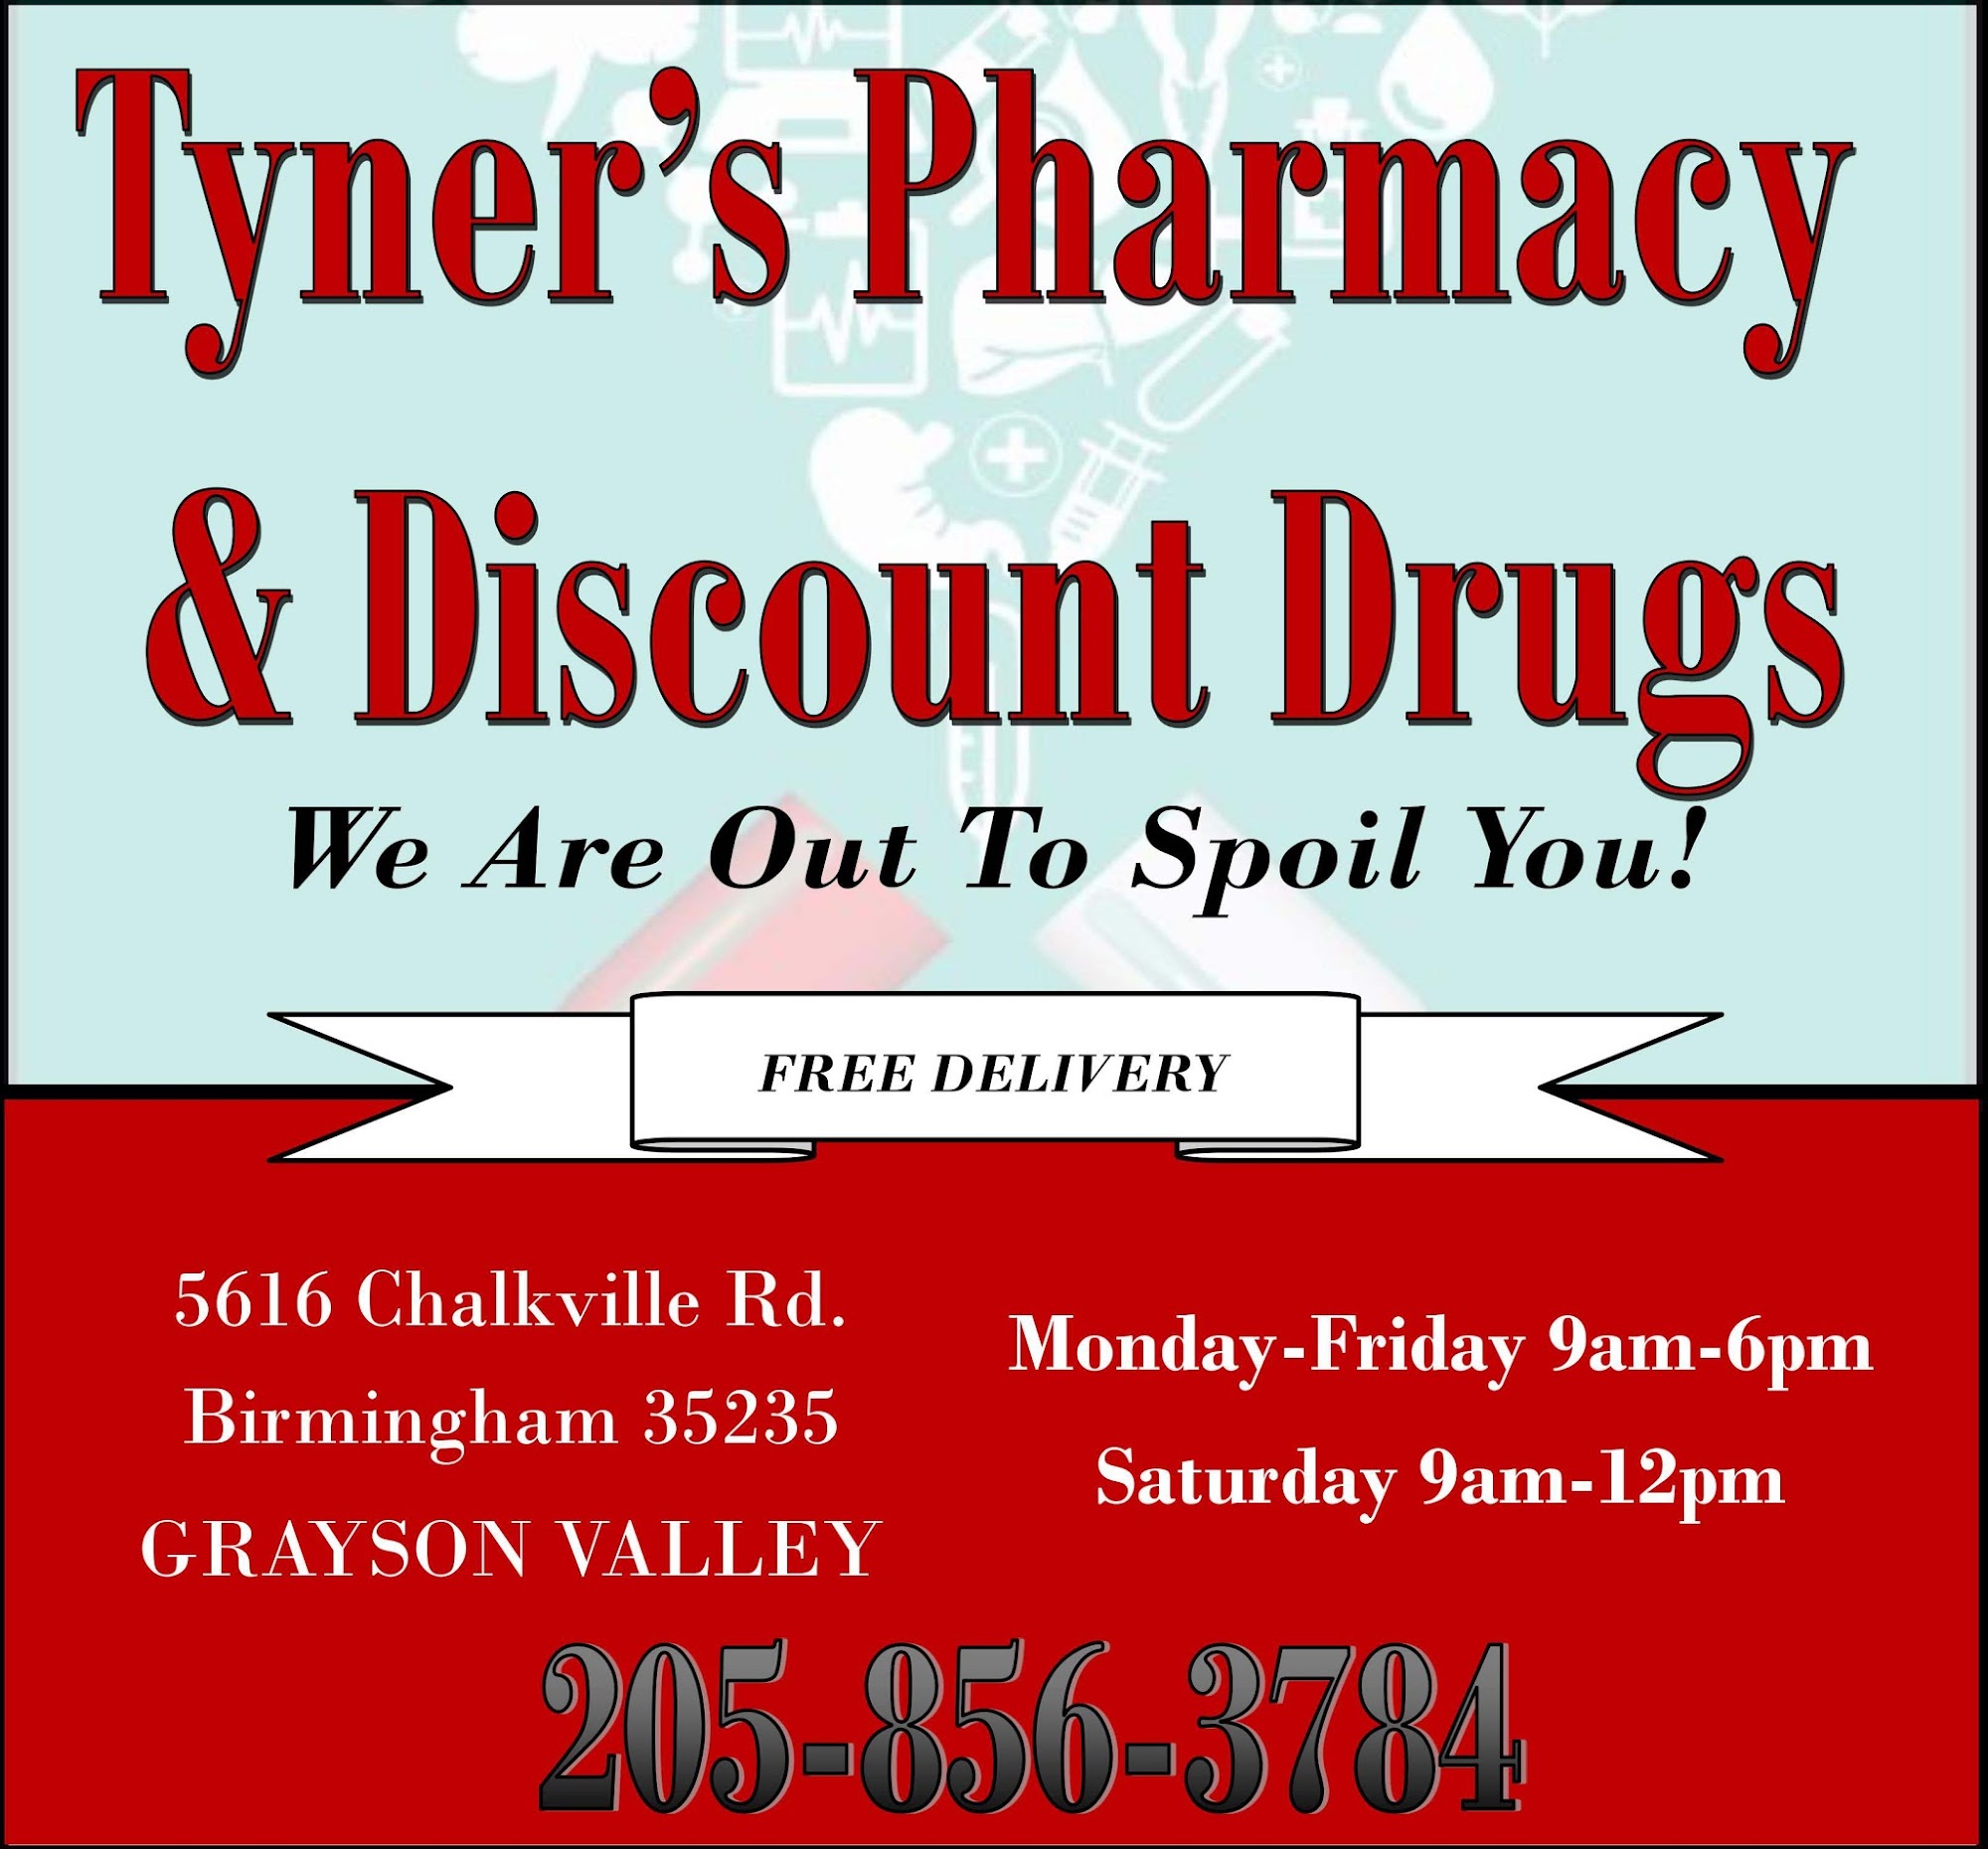 Tyner's Pharmacy